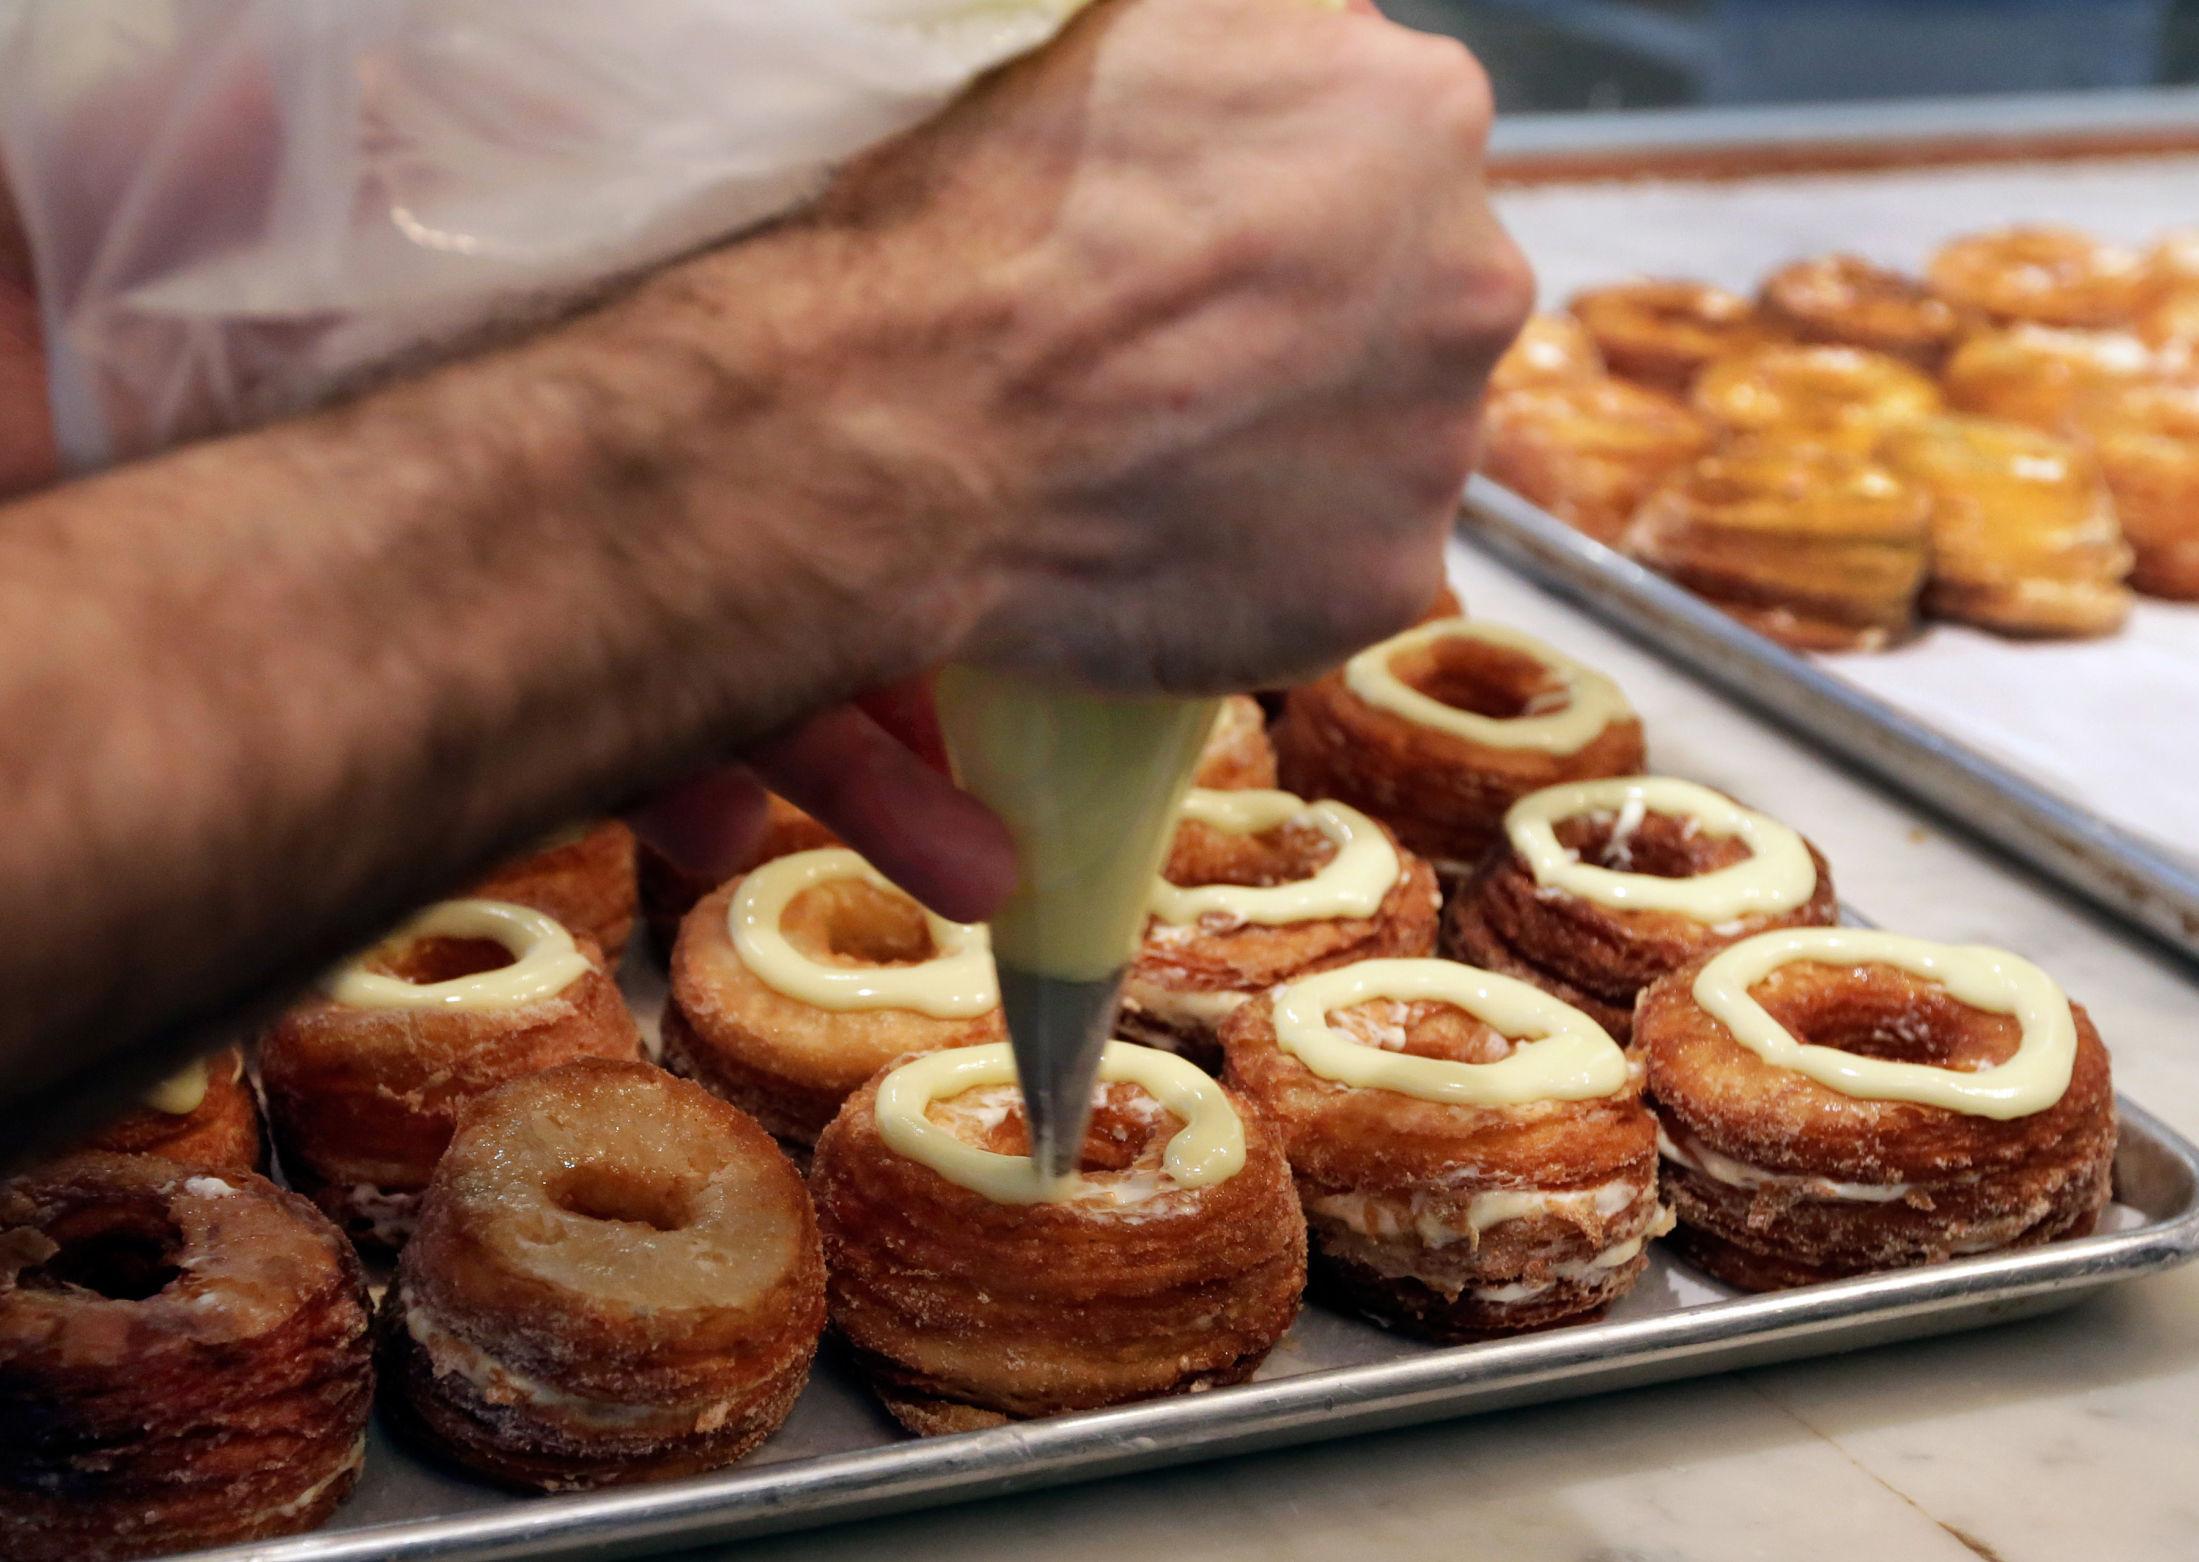 ETTERTRAKTET: Den fristende Cronut-en i all sin prakt er en kombinasjon av en donut og en croissant fylt med en kremet saus og toppet med glasur. Ikke rart det ble hysteriske tilstander i New York da den kom i fjor. Foto: Richard Drew/AP